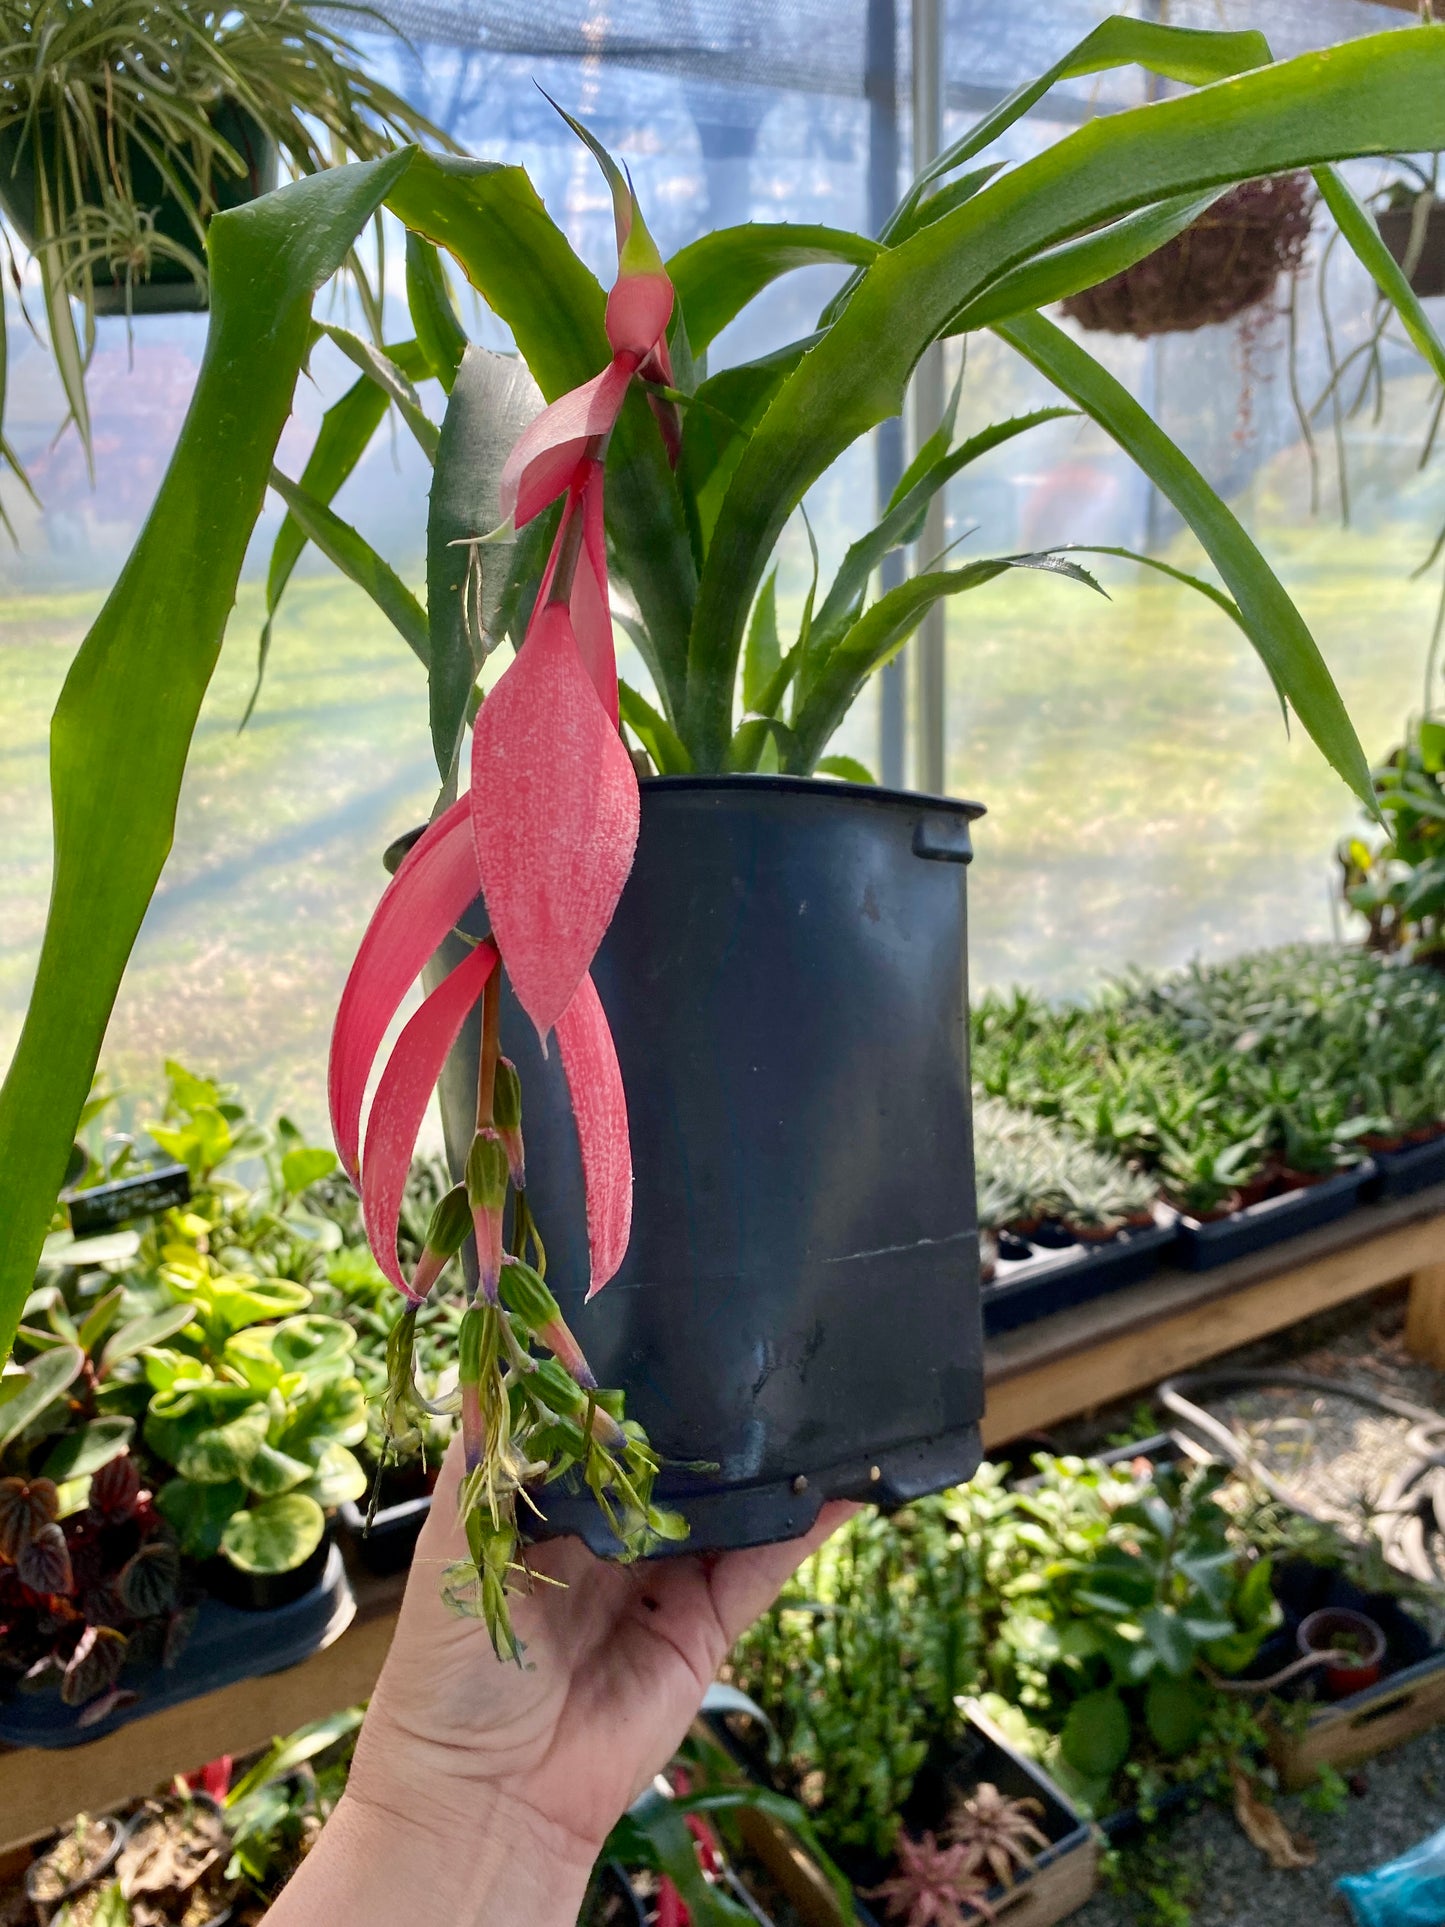 Bromeliad Queen's Tears Billbergia Nutans 5" Tall Pot Live Plant